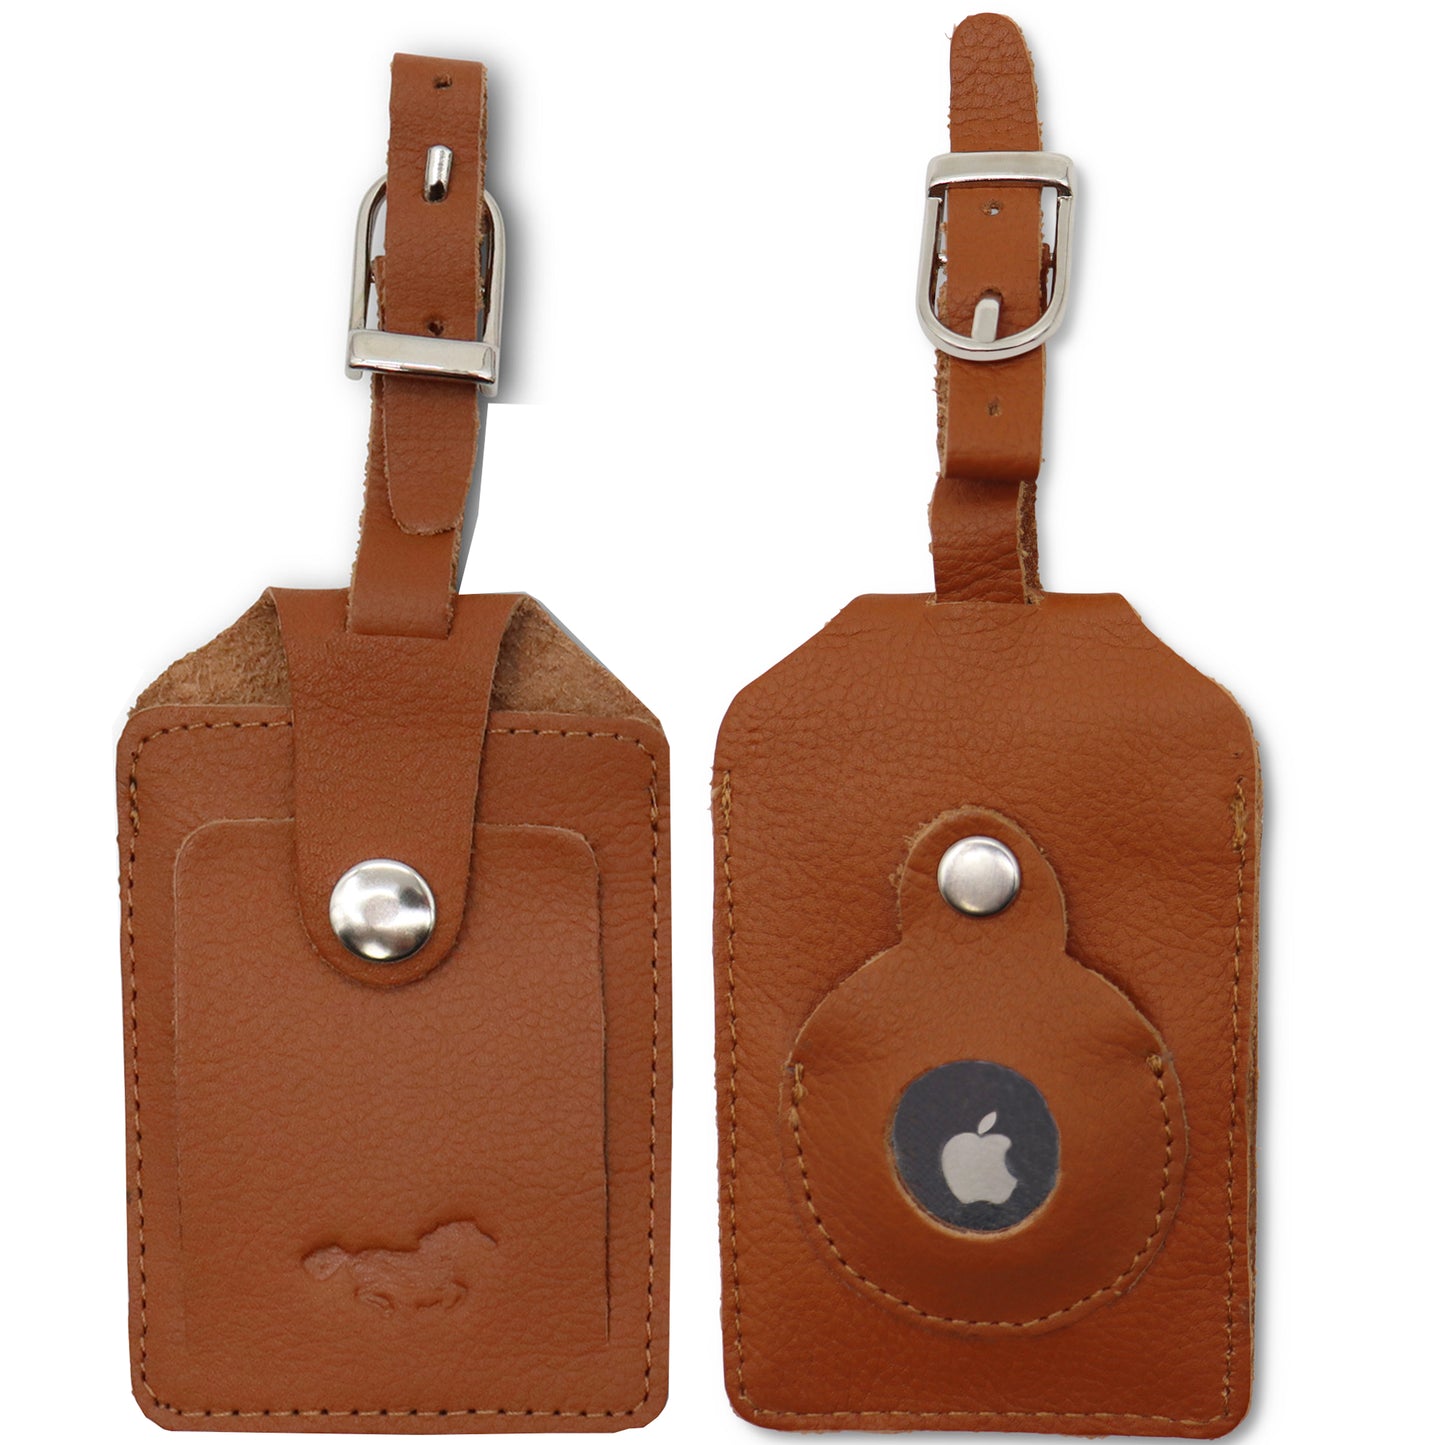 Safekeepers Kofferanhänger - 2 stück Gepäckanhänger mit Adressschild - Platz für Airtag - Echtes Leder -Kofferanhänger mit Adressschild, Tags mit Namensschild zum Erkennen Ihrer Reisetasche